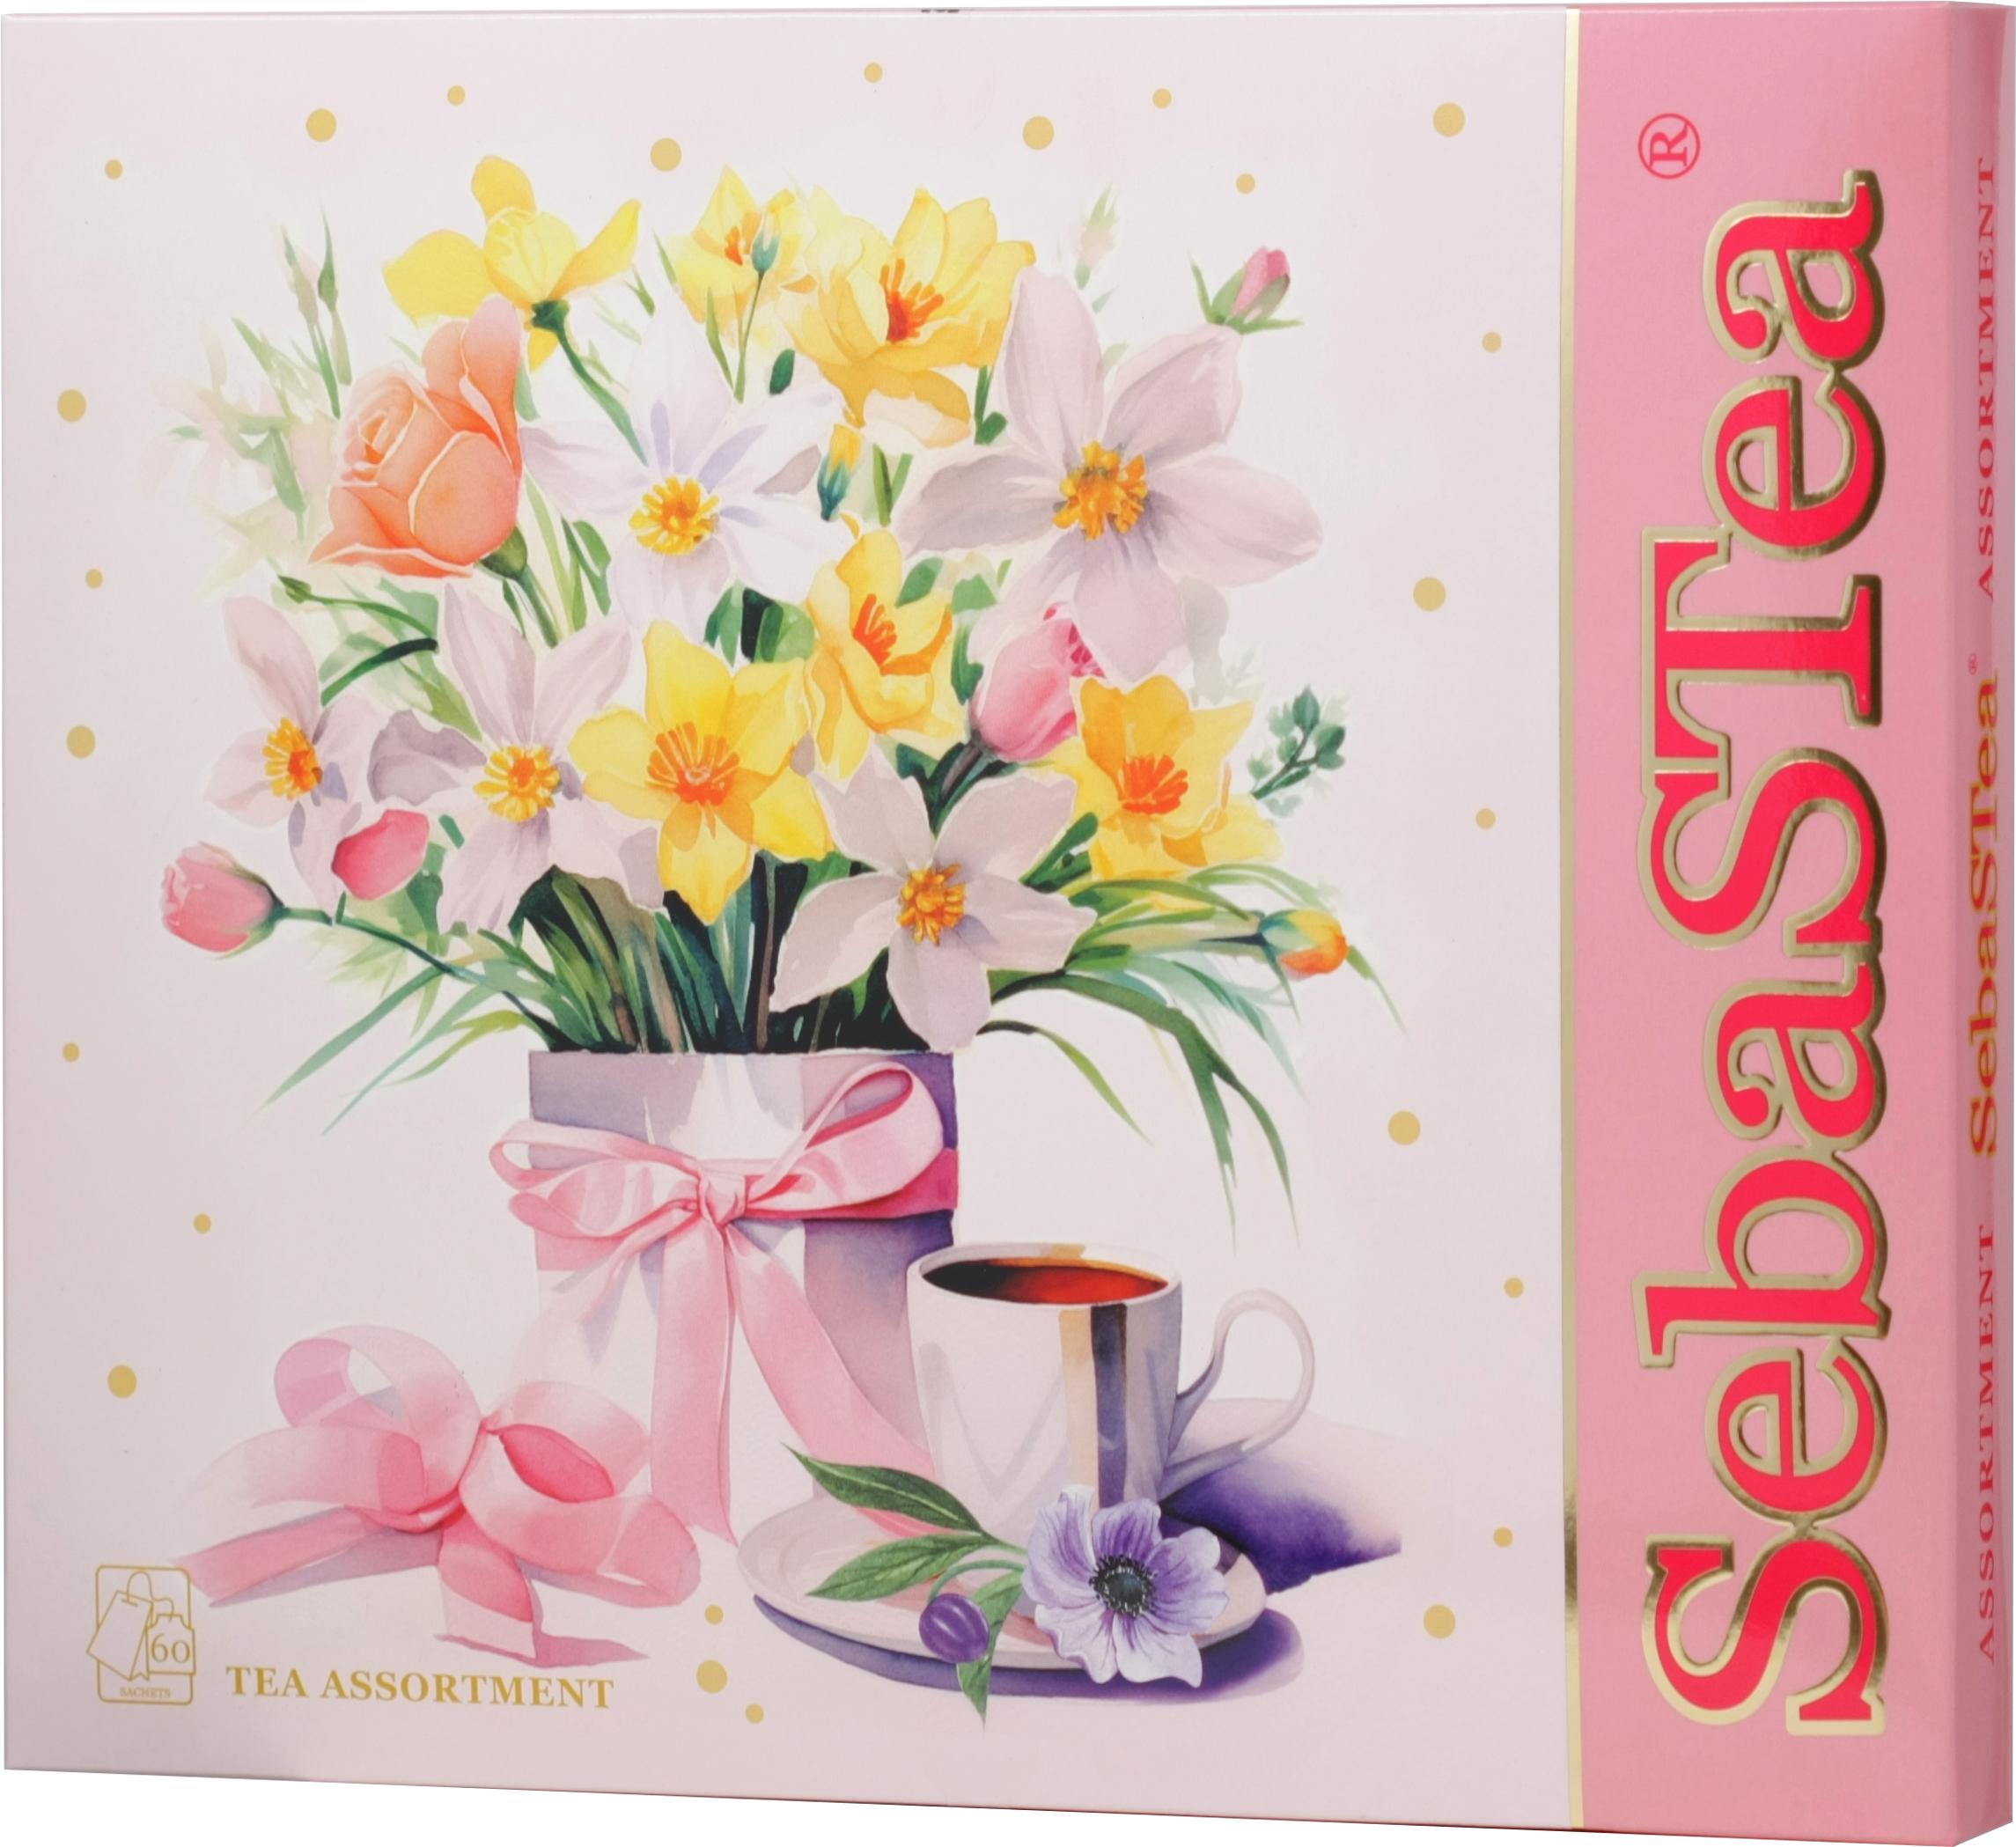 Чай SebaSTea FESTIVAL VI Коллекция Ассорти вкусов весна 60 пакетиков 3 вида букетов 95 гр., картон